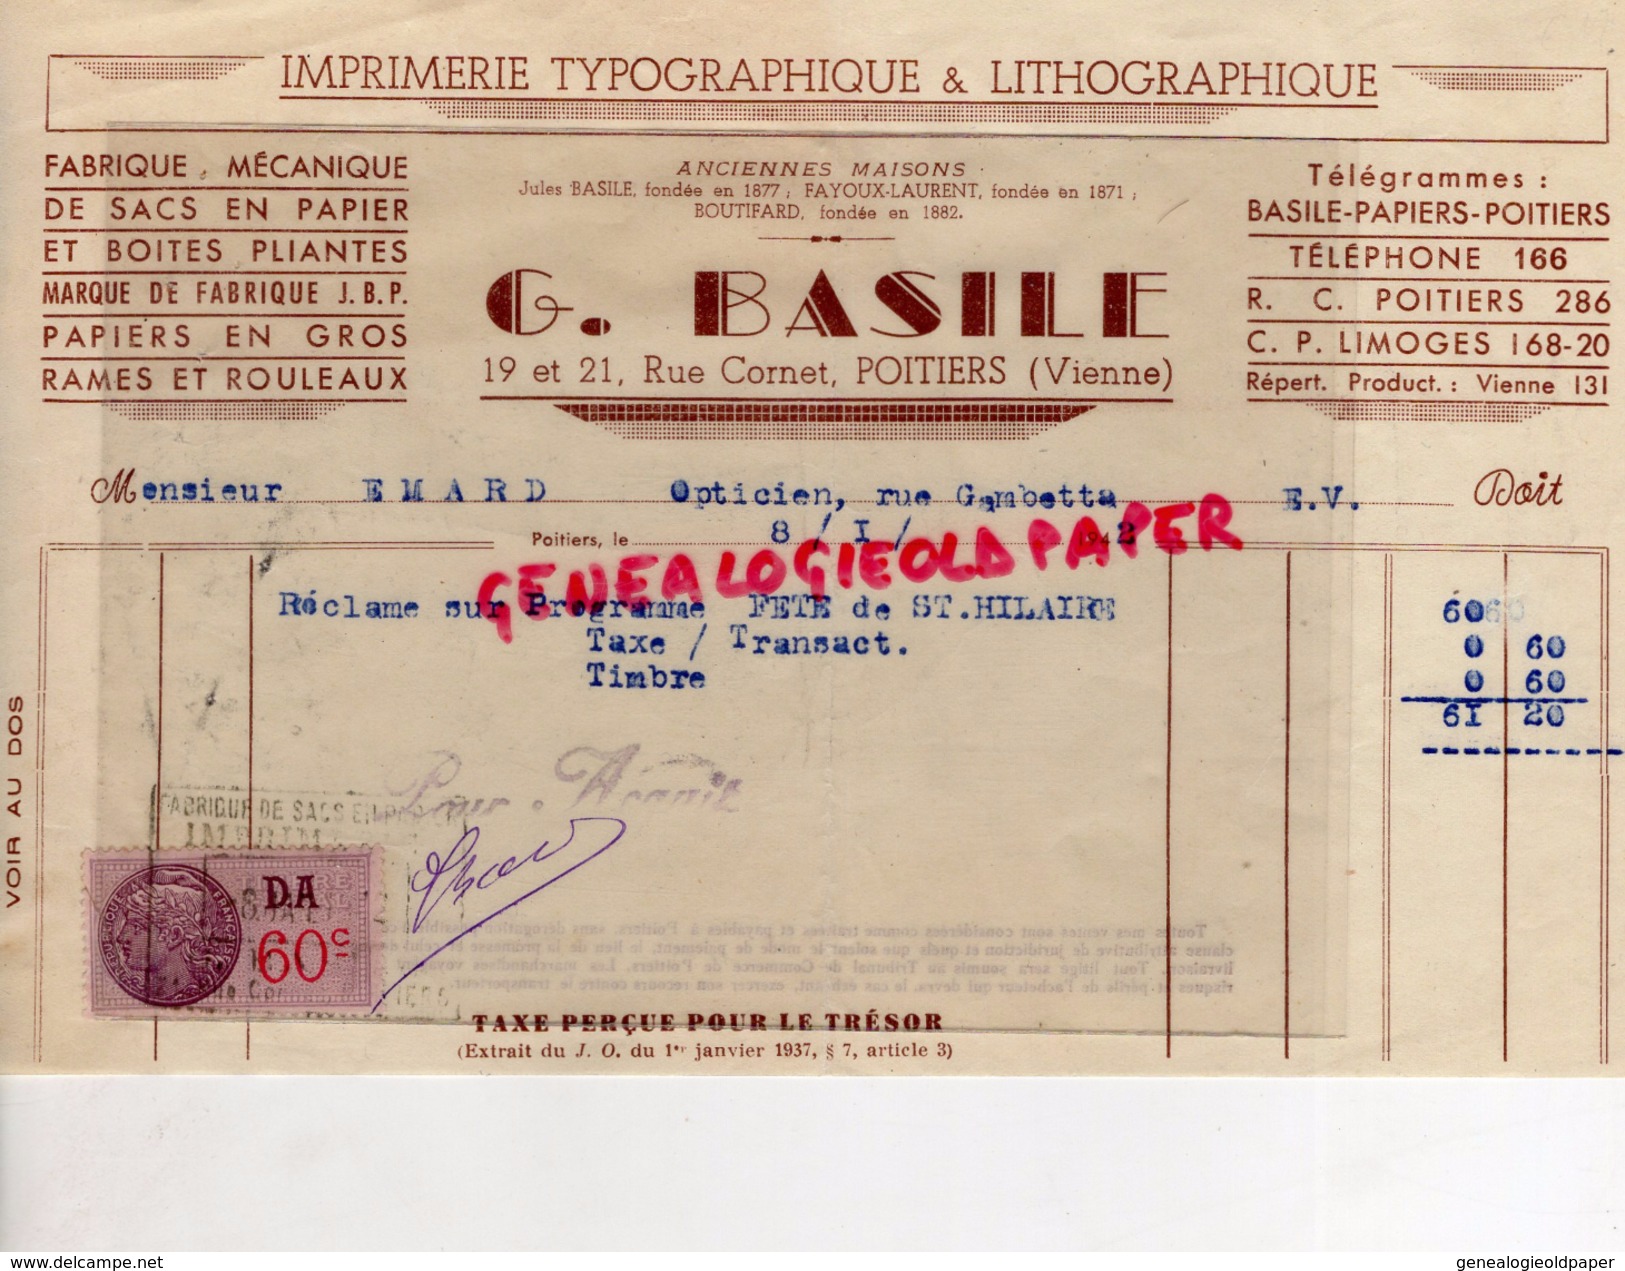 86- POITIERS- FACTURE IMPRIMERIE TYPOGRAPHIE LITHOGRAPHIE- G. BASILE-19 RUE CORNET- 1942 - Imprimerie & Papeterie